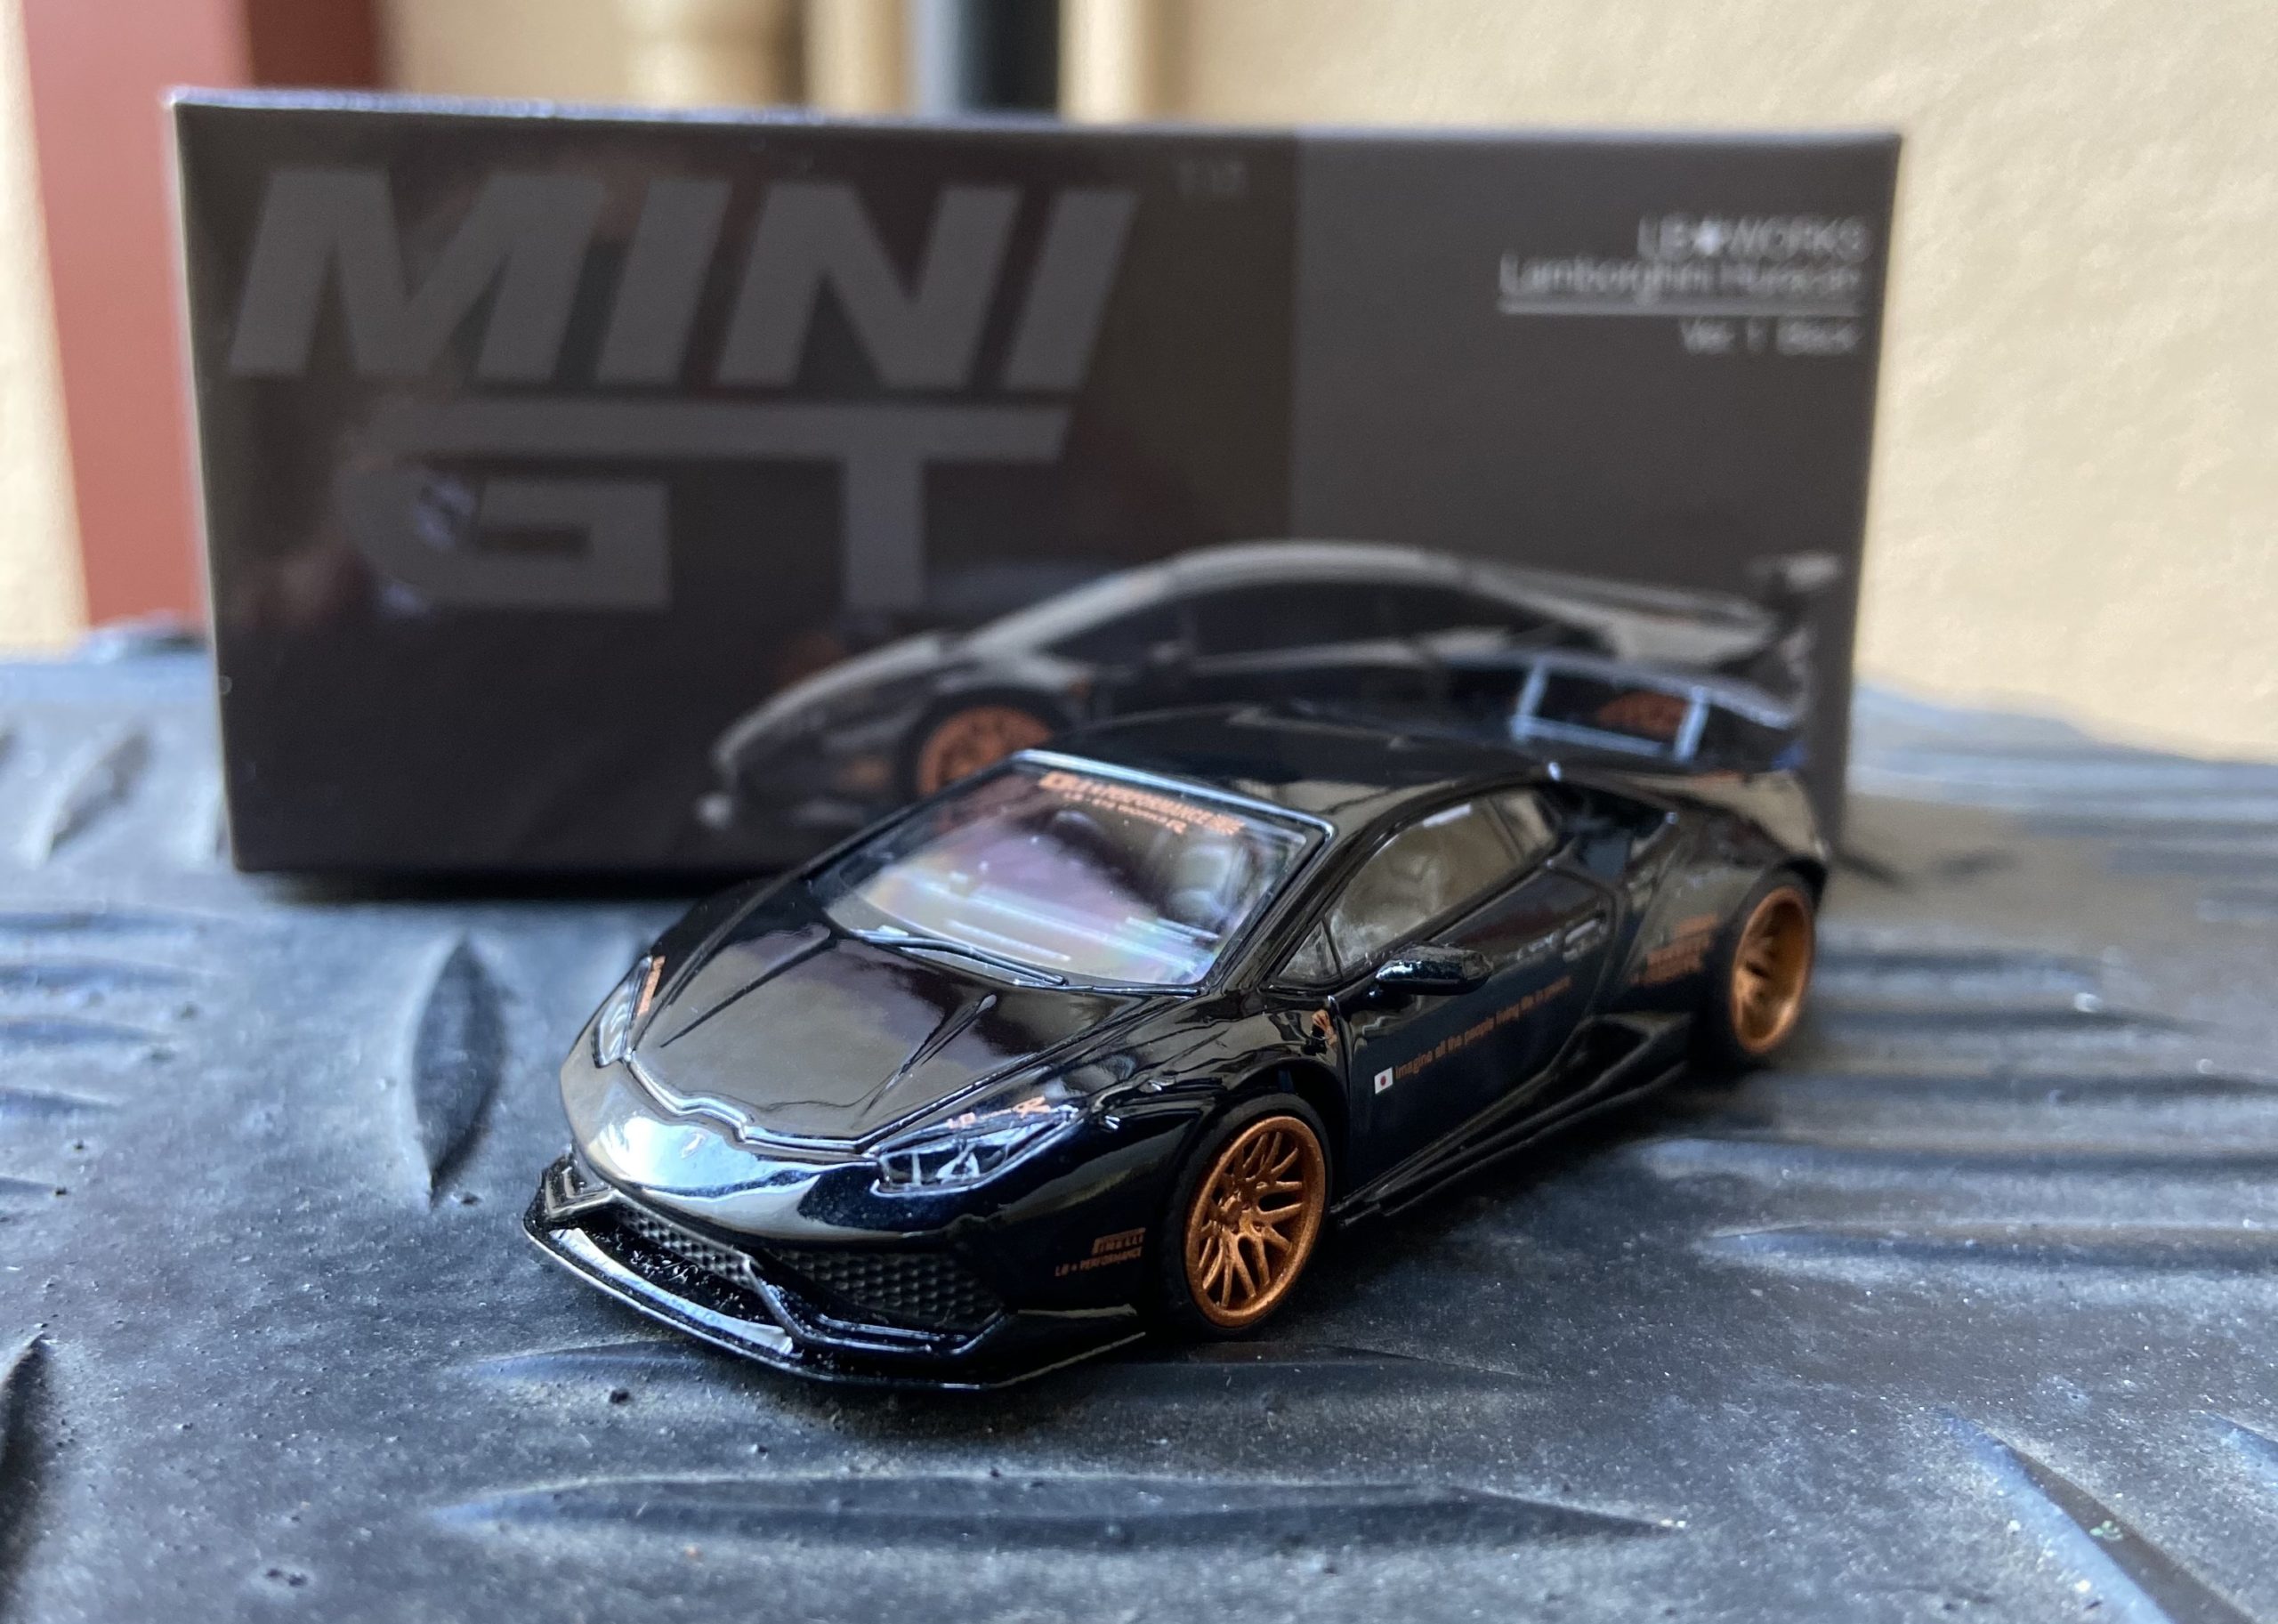 MINI GT LB☆WORKS Lamborghini Huracán ver. 1 Black - Castheads